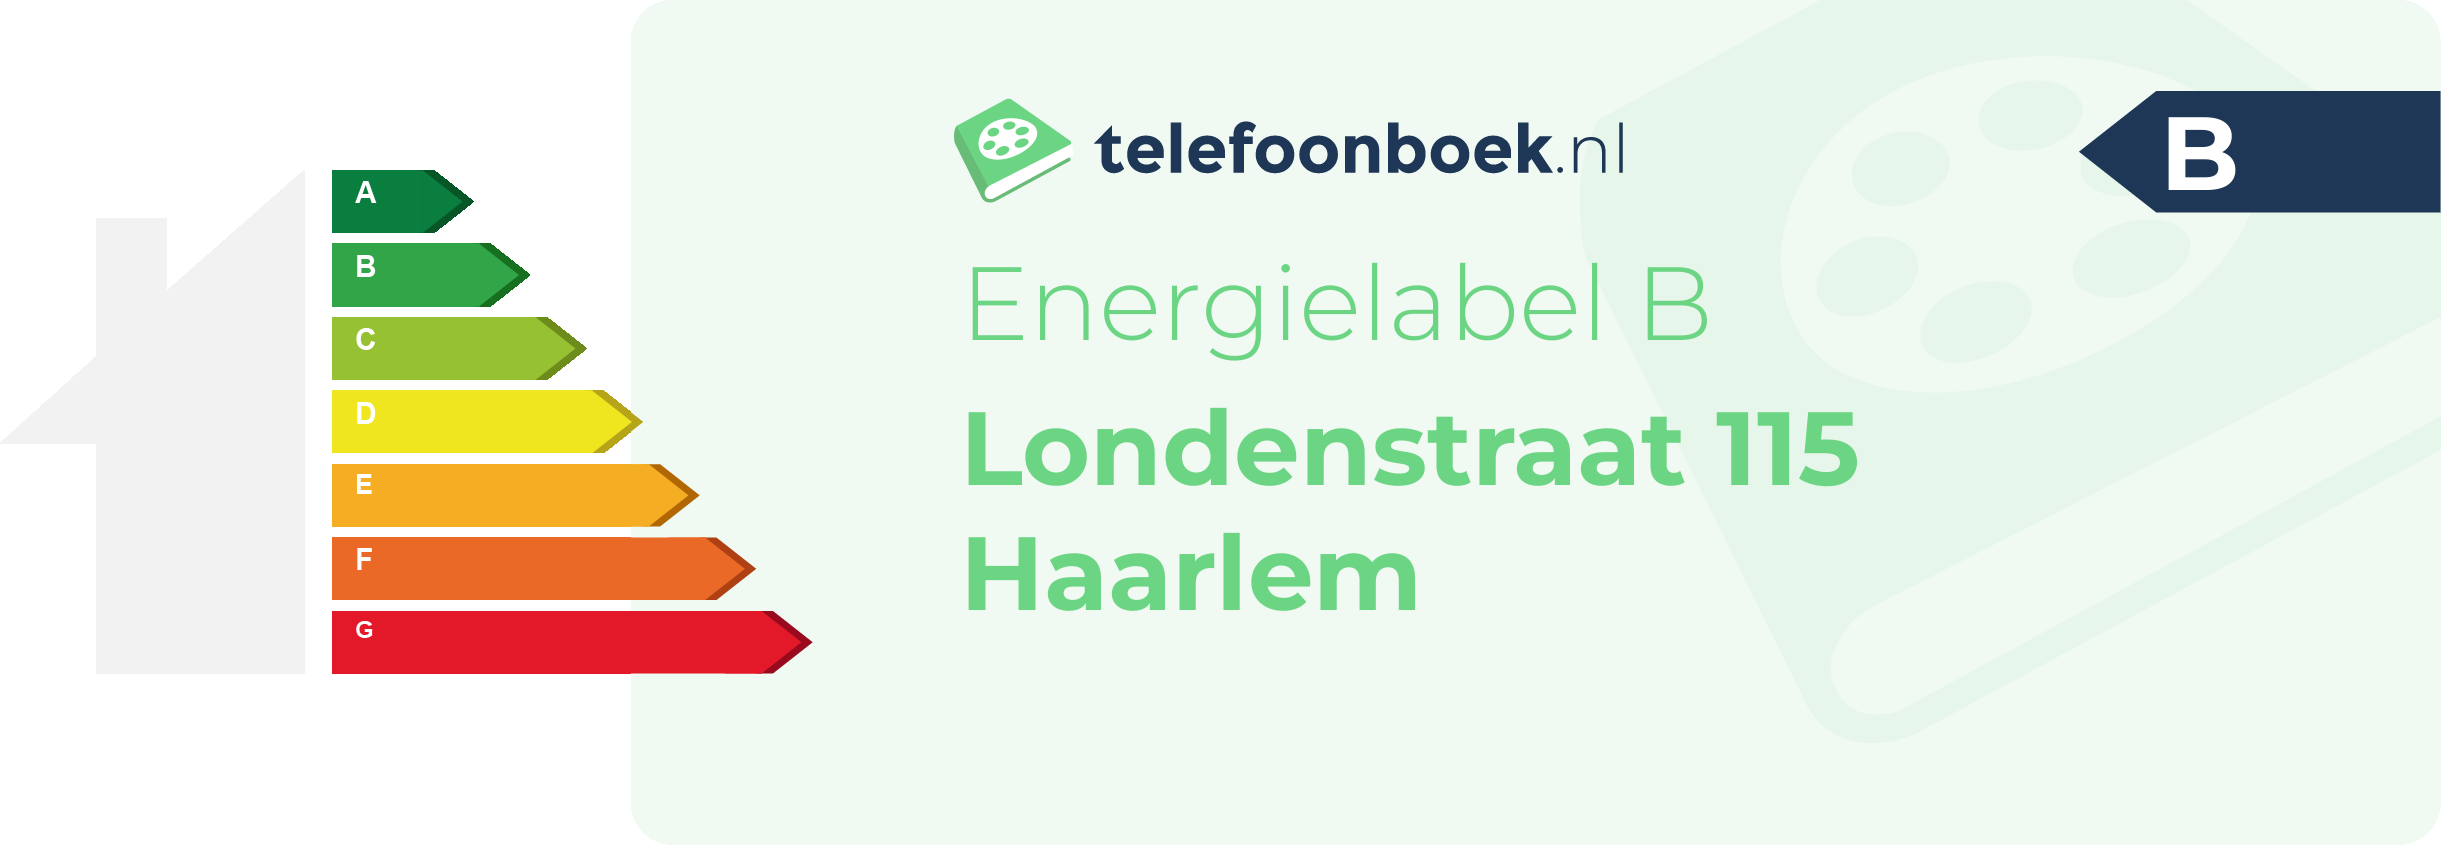 Energielabel Londenstraat 115 Haarlem